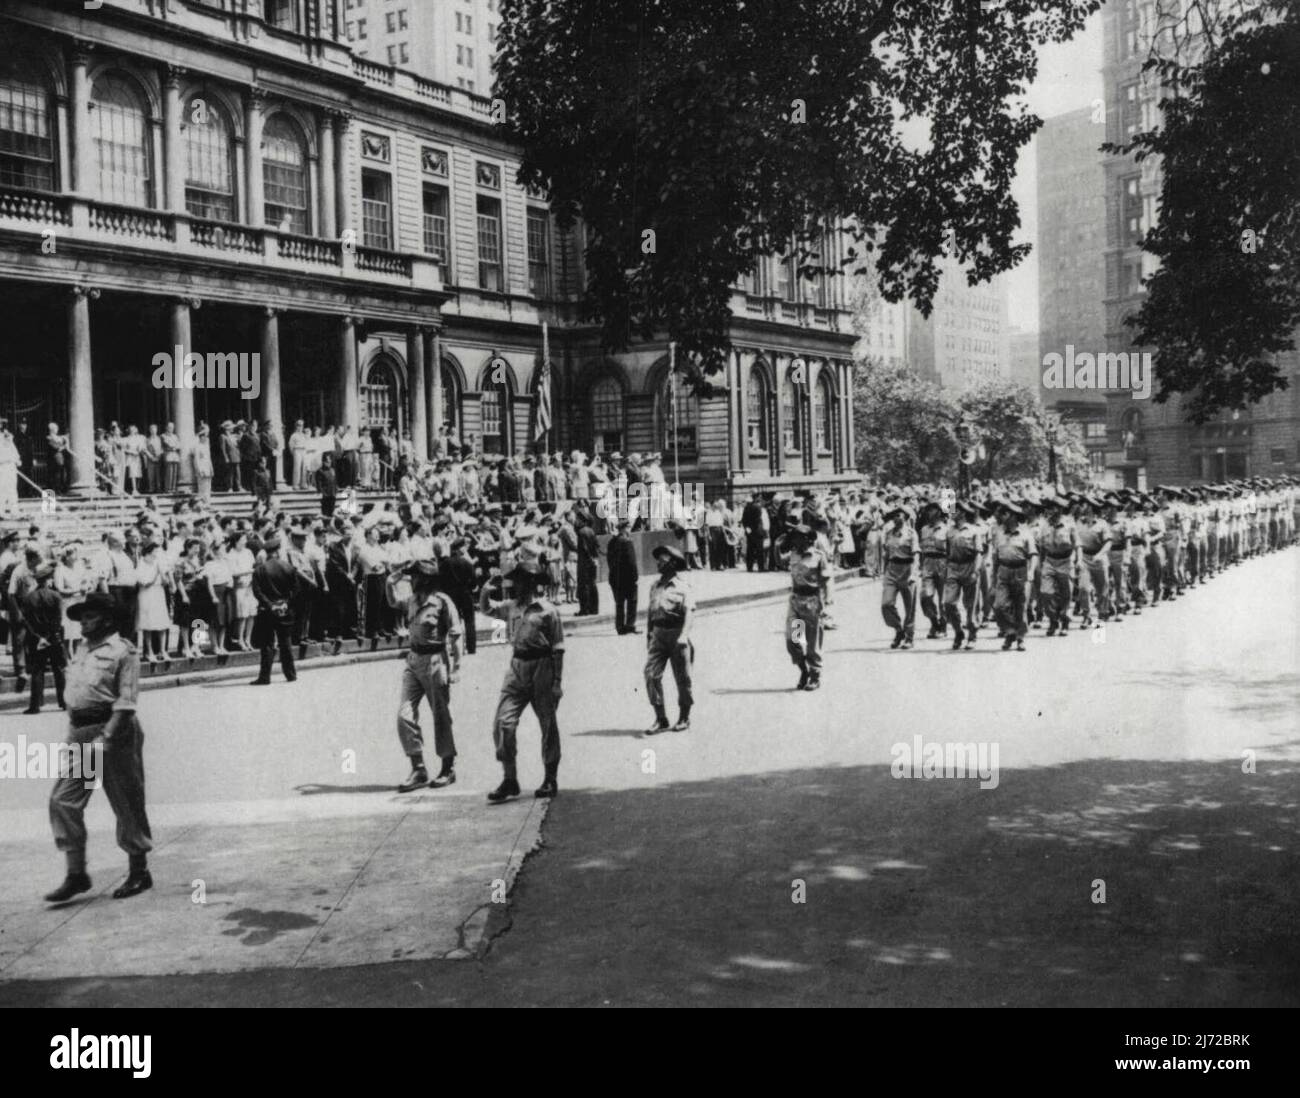 Aussies Parade in New York - Bürgermeister LaGuardia blickt vom Rathaus aus auf die Parade australischer Soldaten in New York City. 17. August 1944. (Foto von Associated Press Photo). Stockfoto